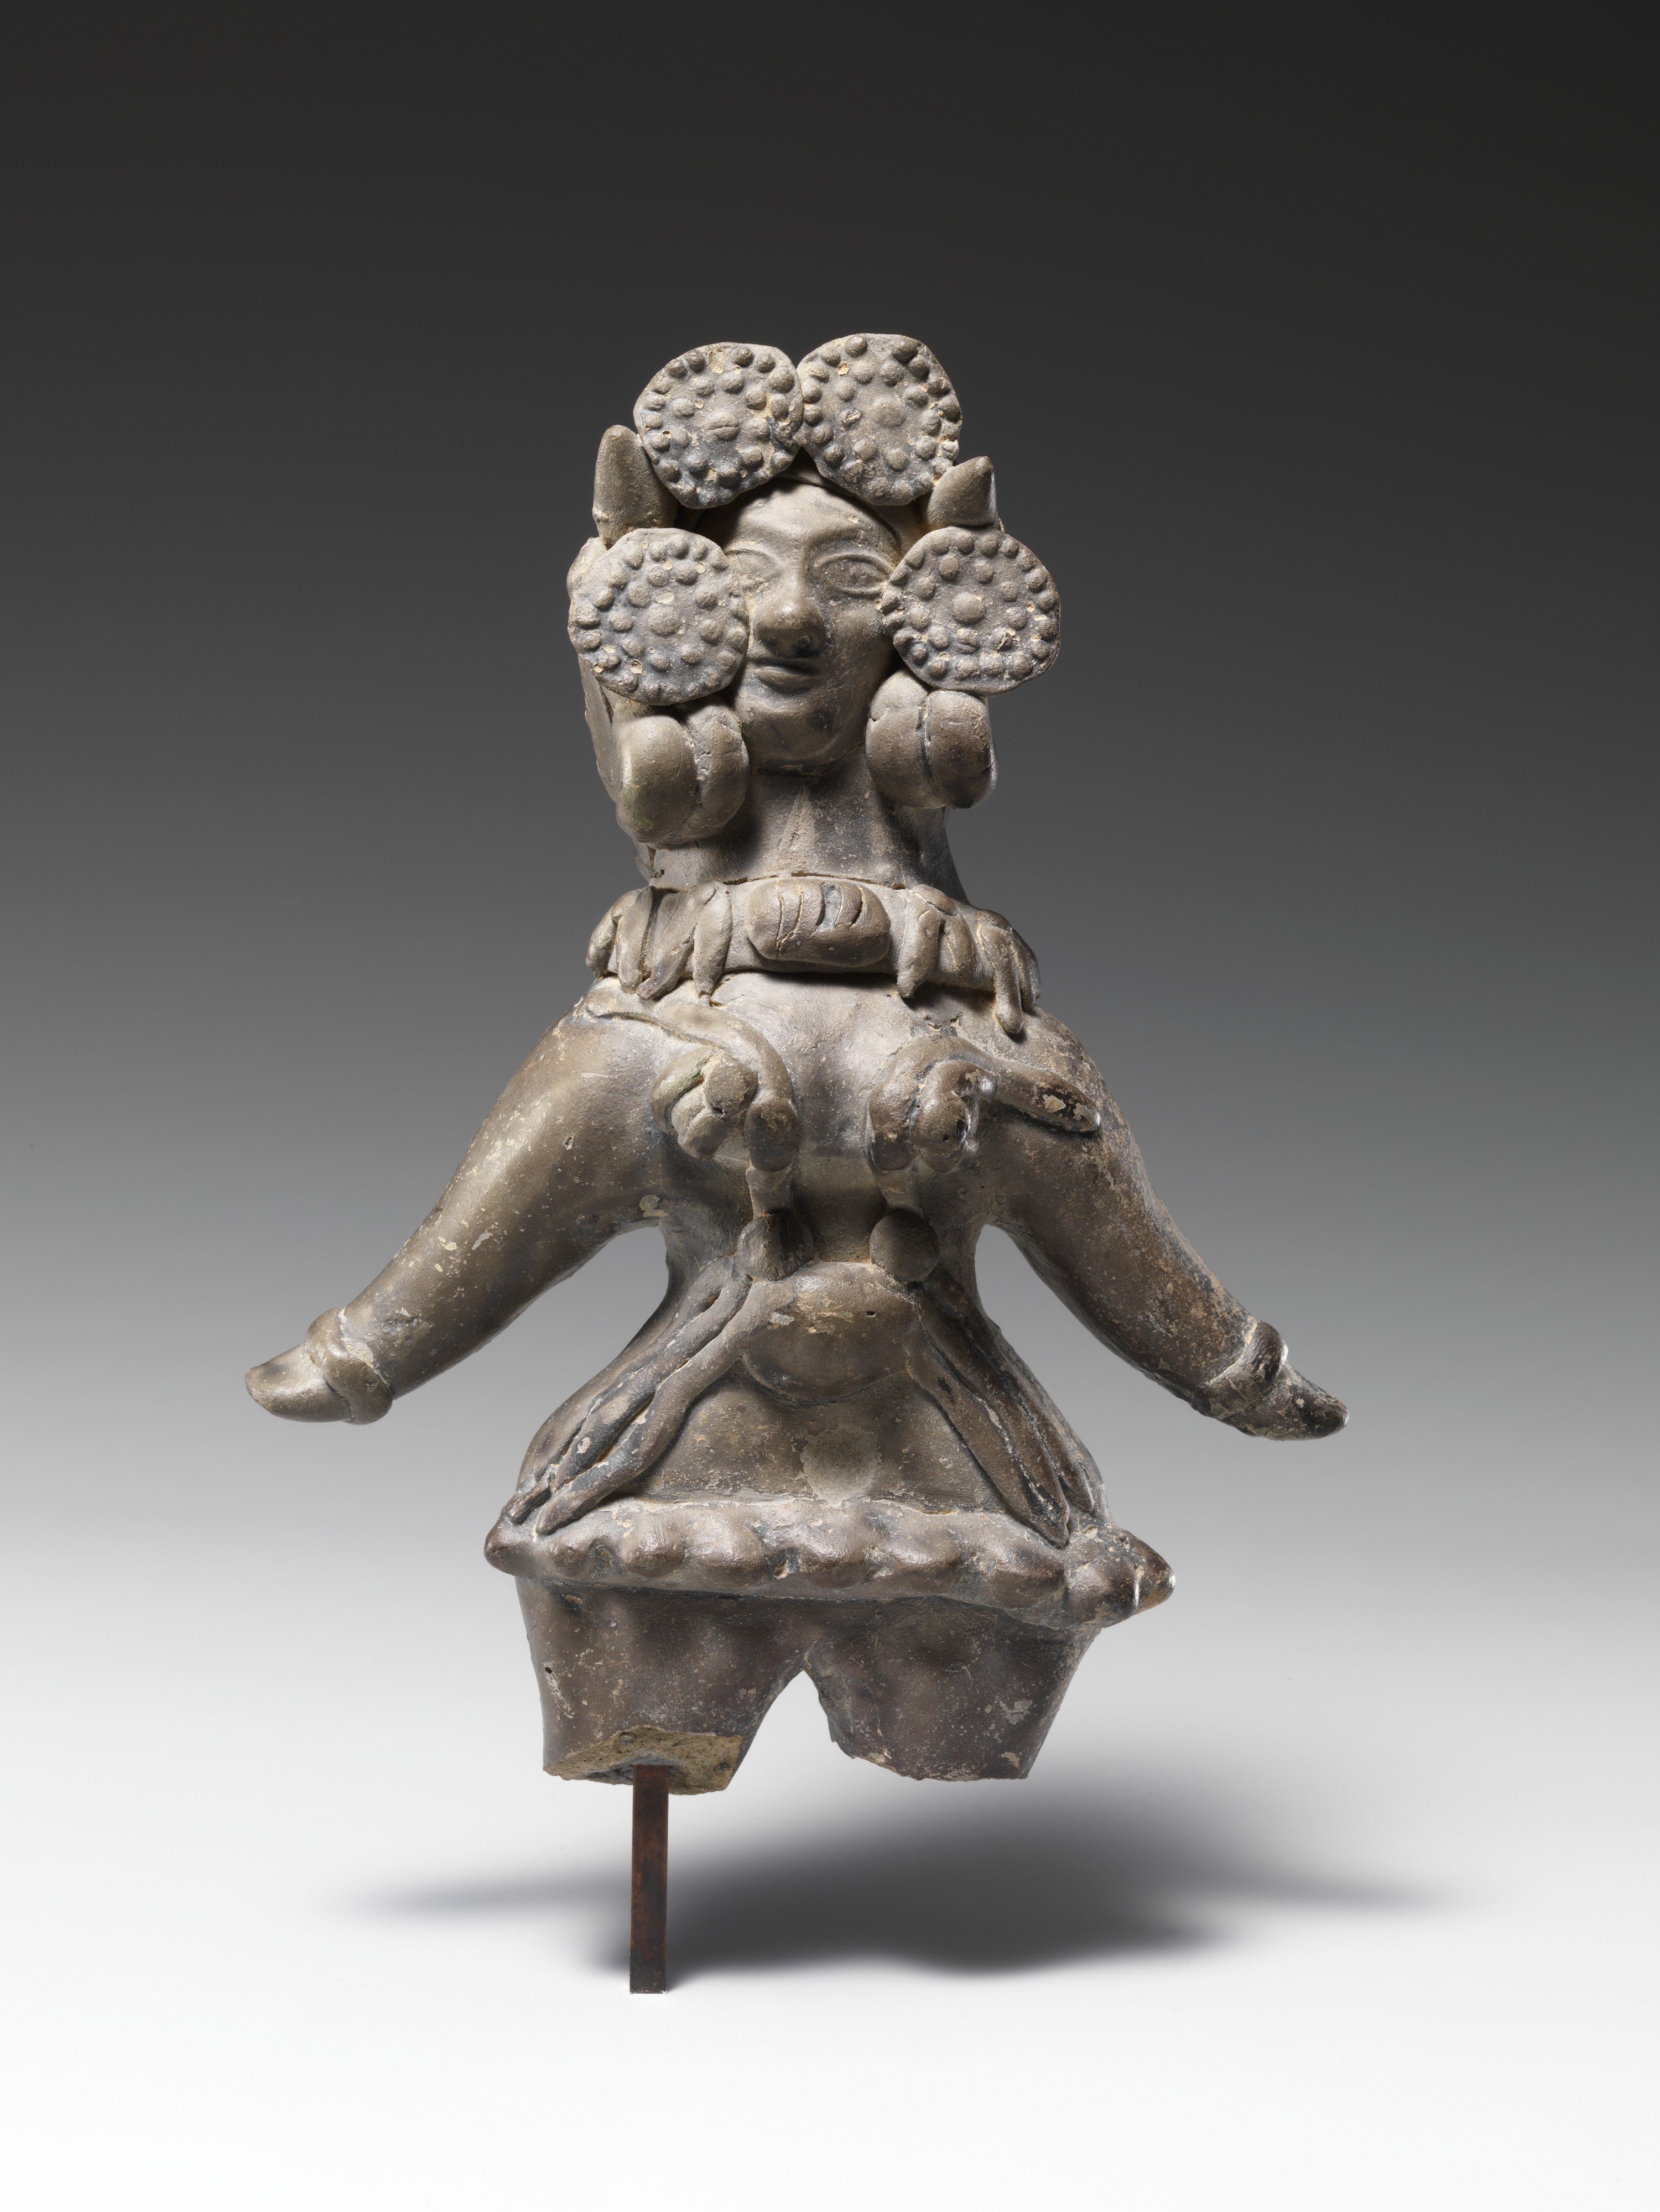 write an essay on sculptures of mauryan art